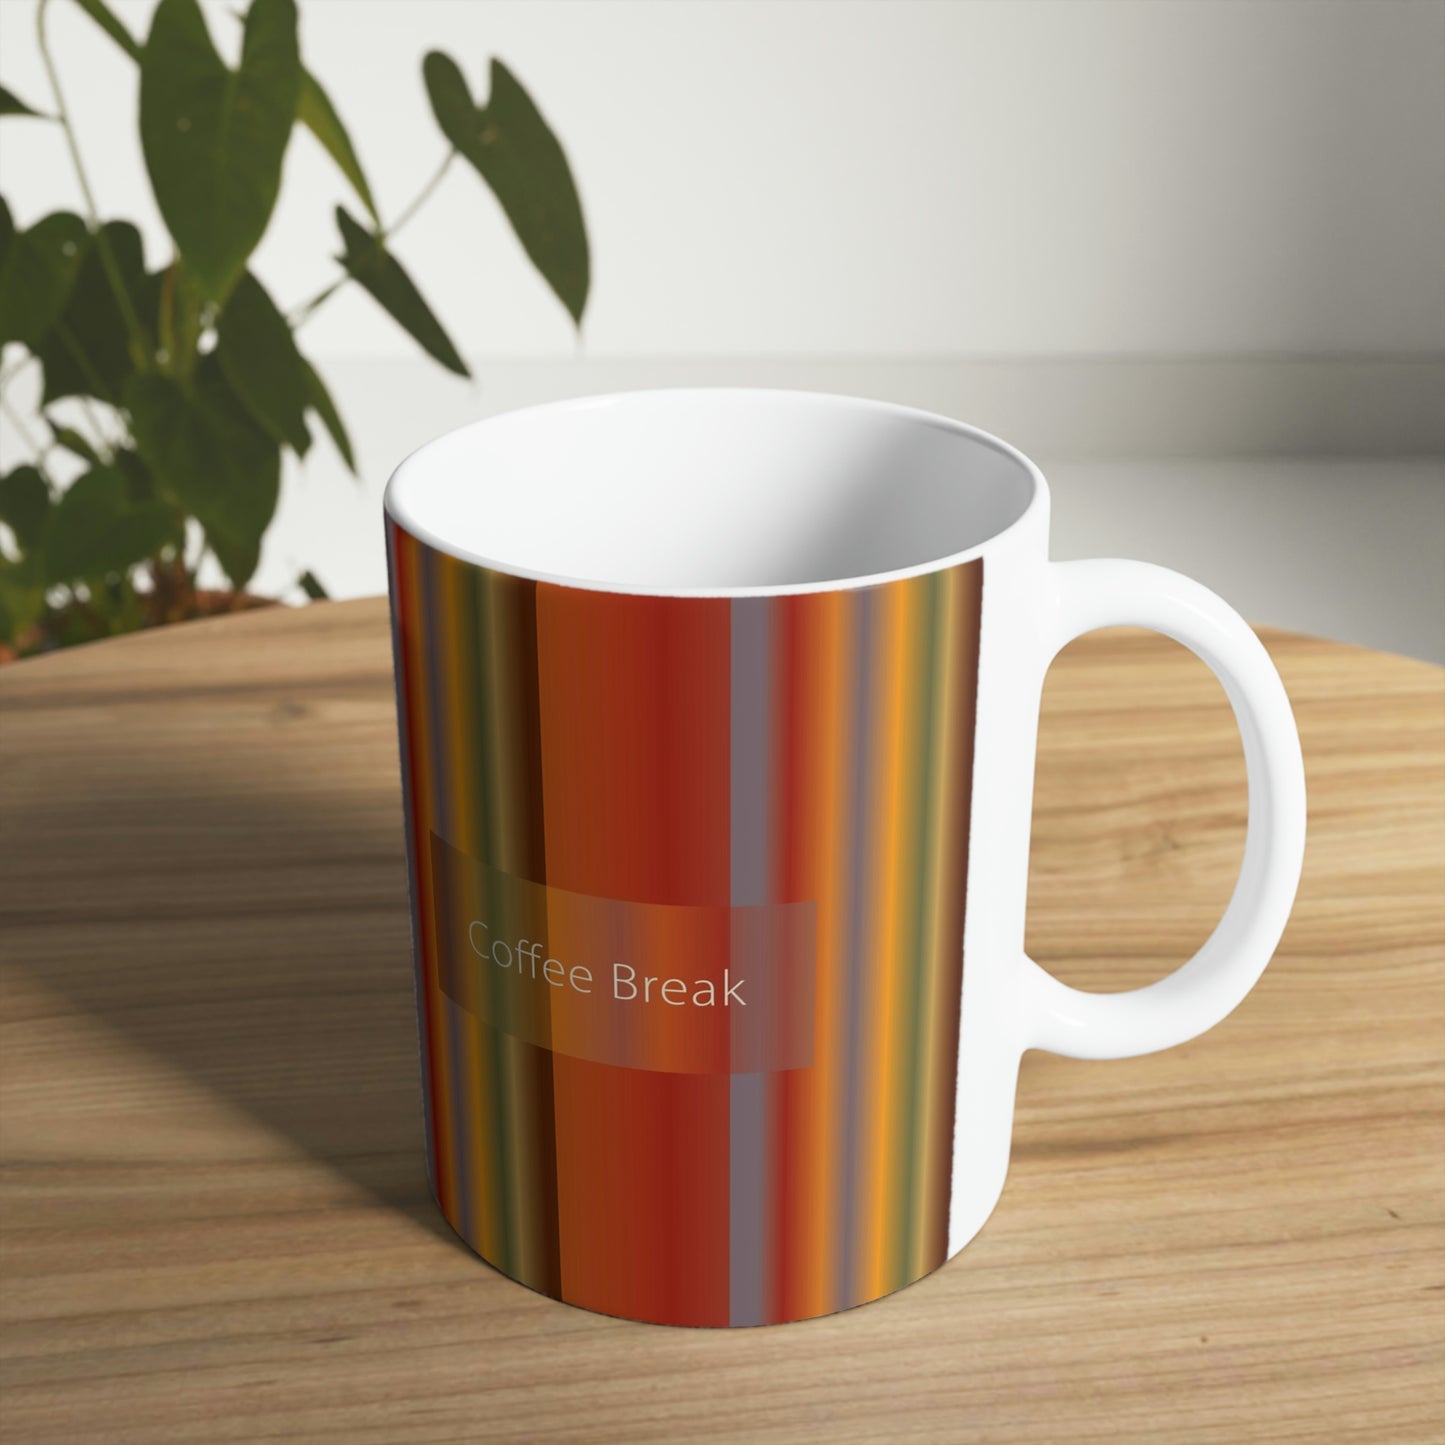 Ceramic Mug 11oz, Coffee Break - Design No.1700